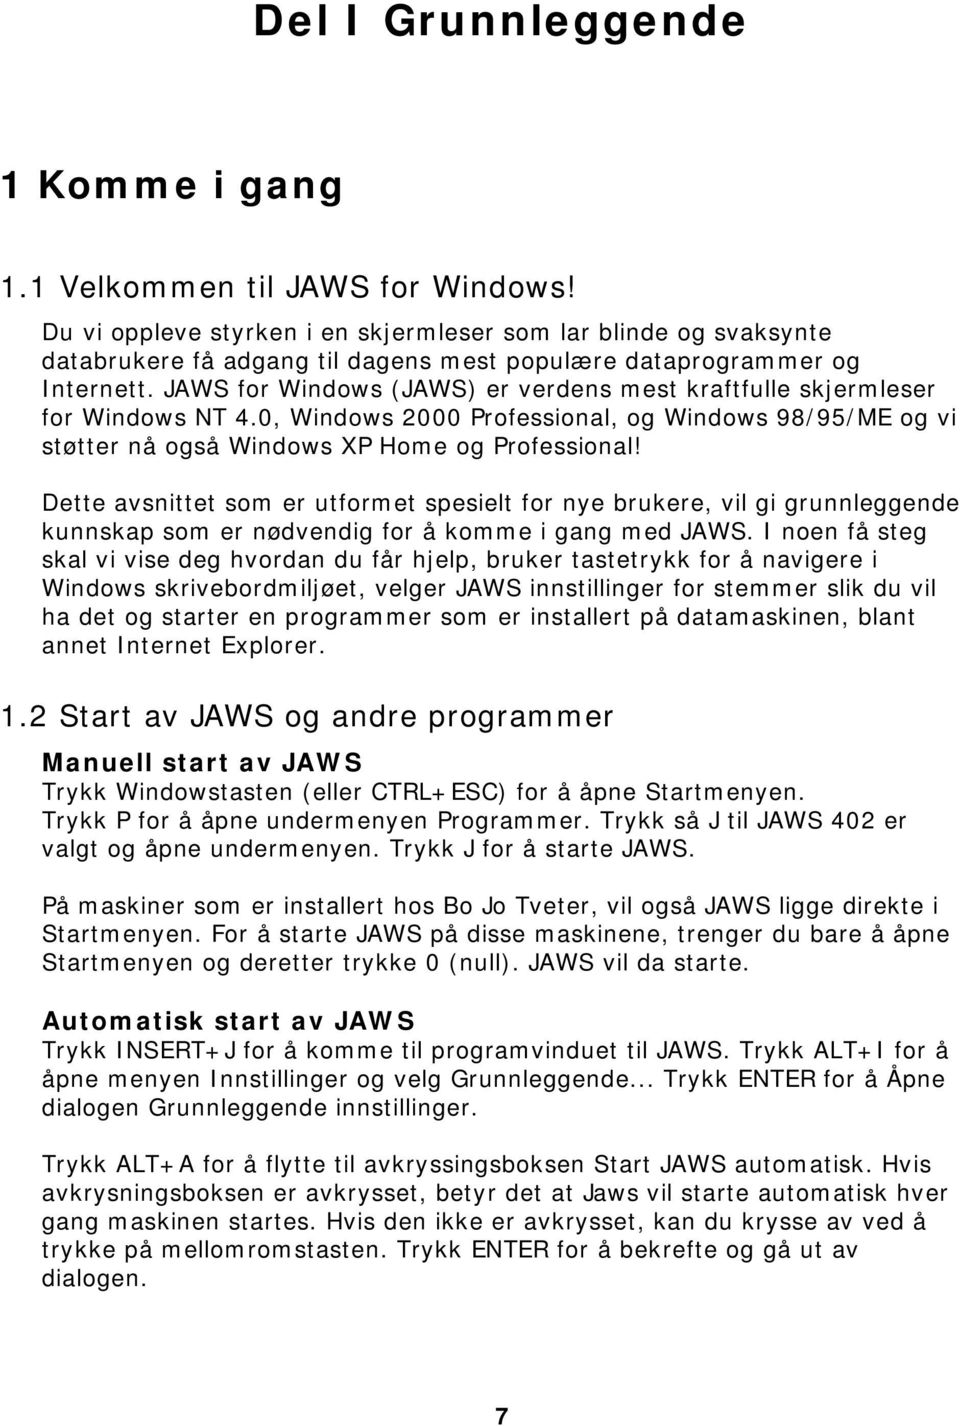 JAWS for Windows (JAWS) er verdens mest kraftfulle skjermleser for Windows NT 4.0, Windows 2000 Professional, og Windows 98/95/ME og vi støtter nå også Windows XP Home og Professional!